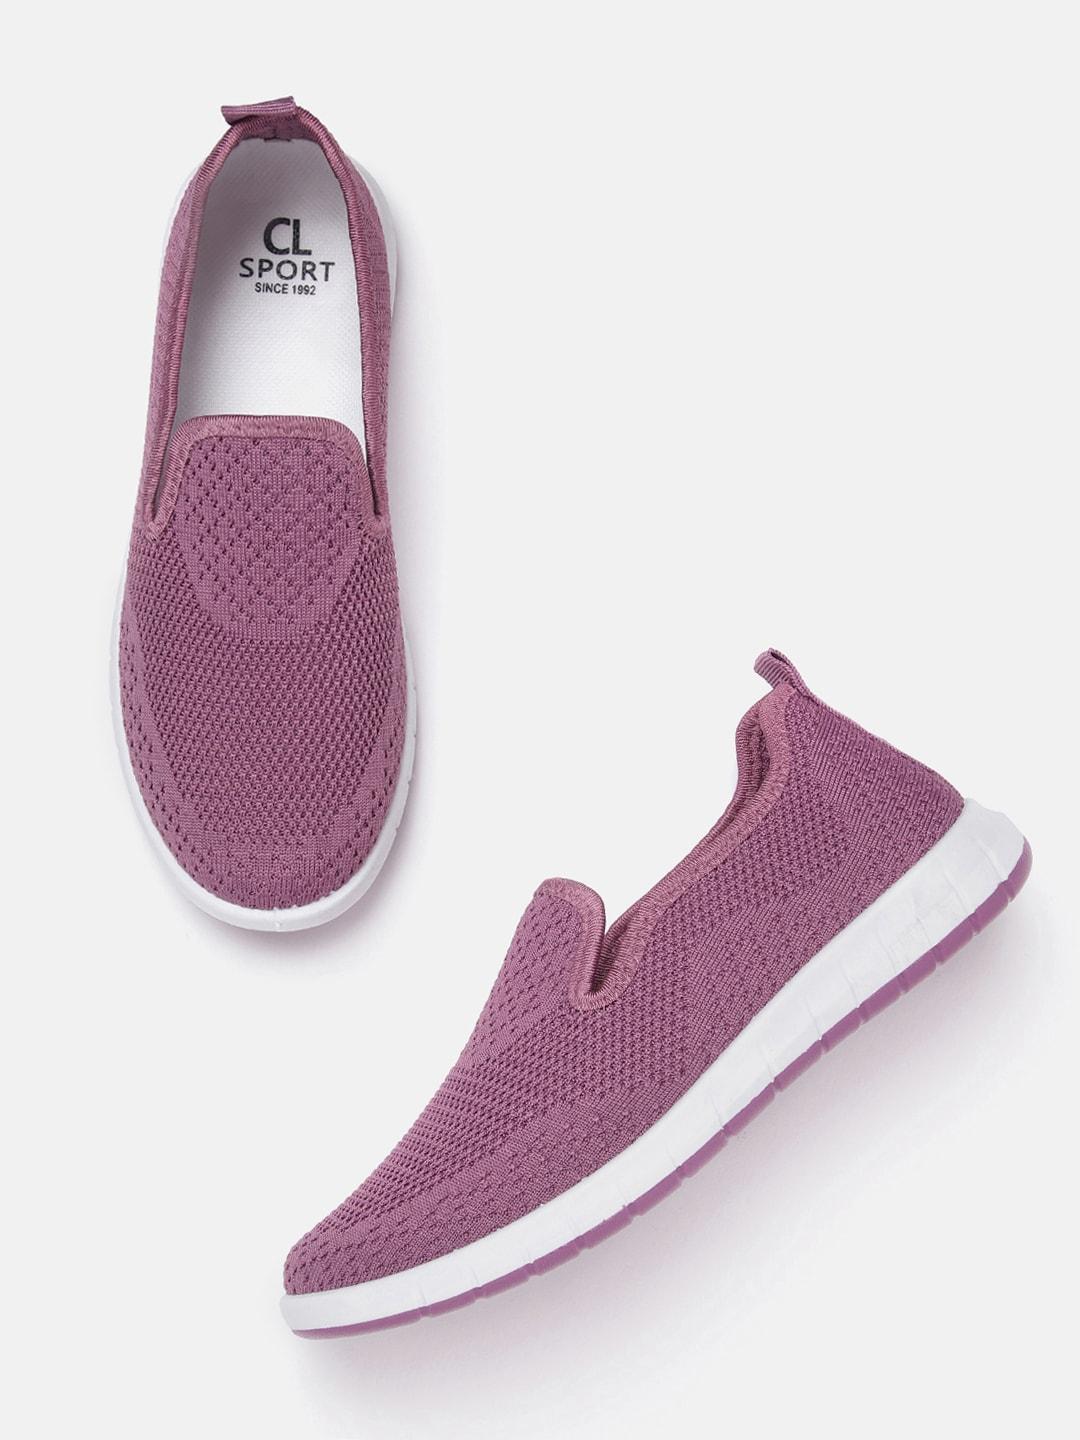 carlton london sports women purple woven design slip-on sneakers